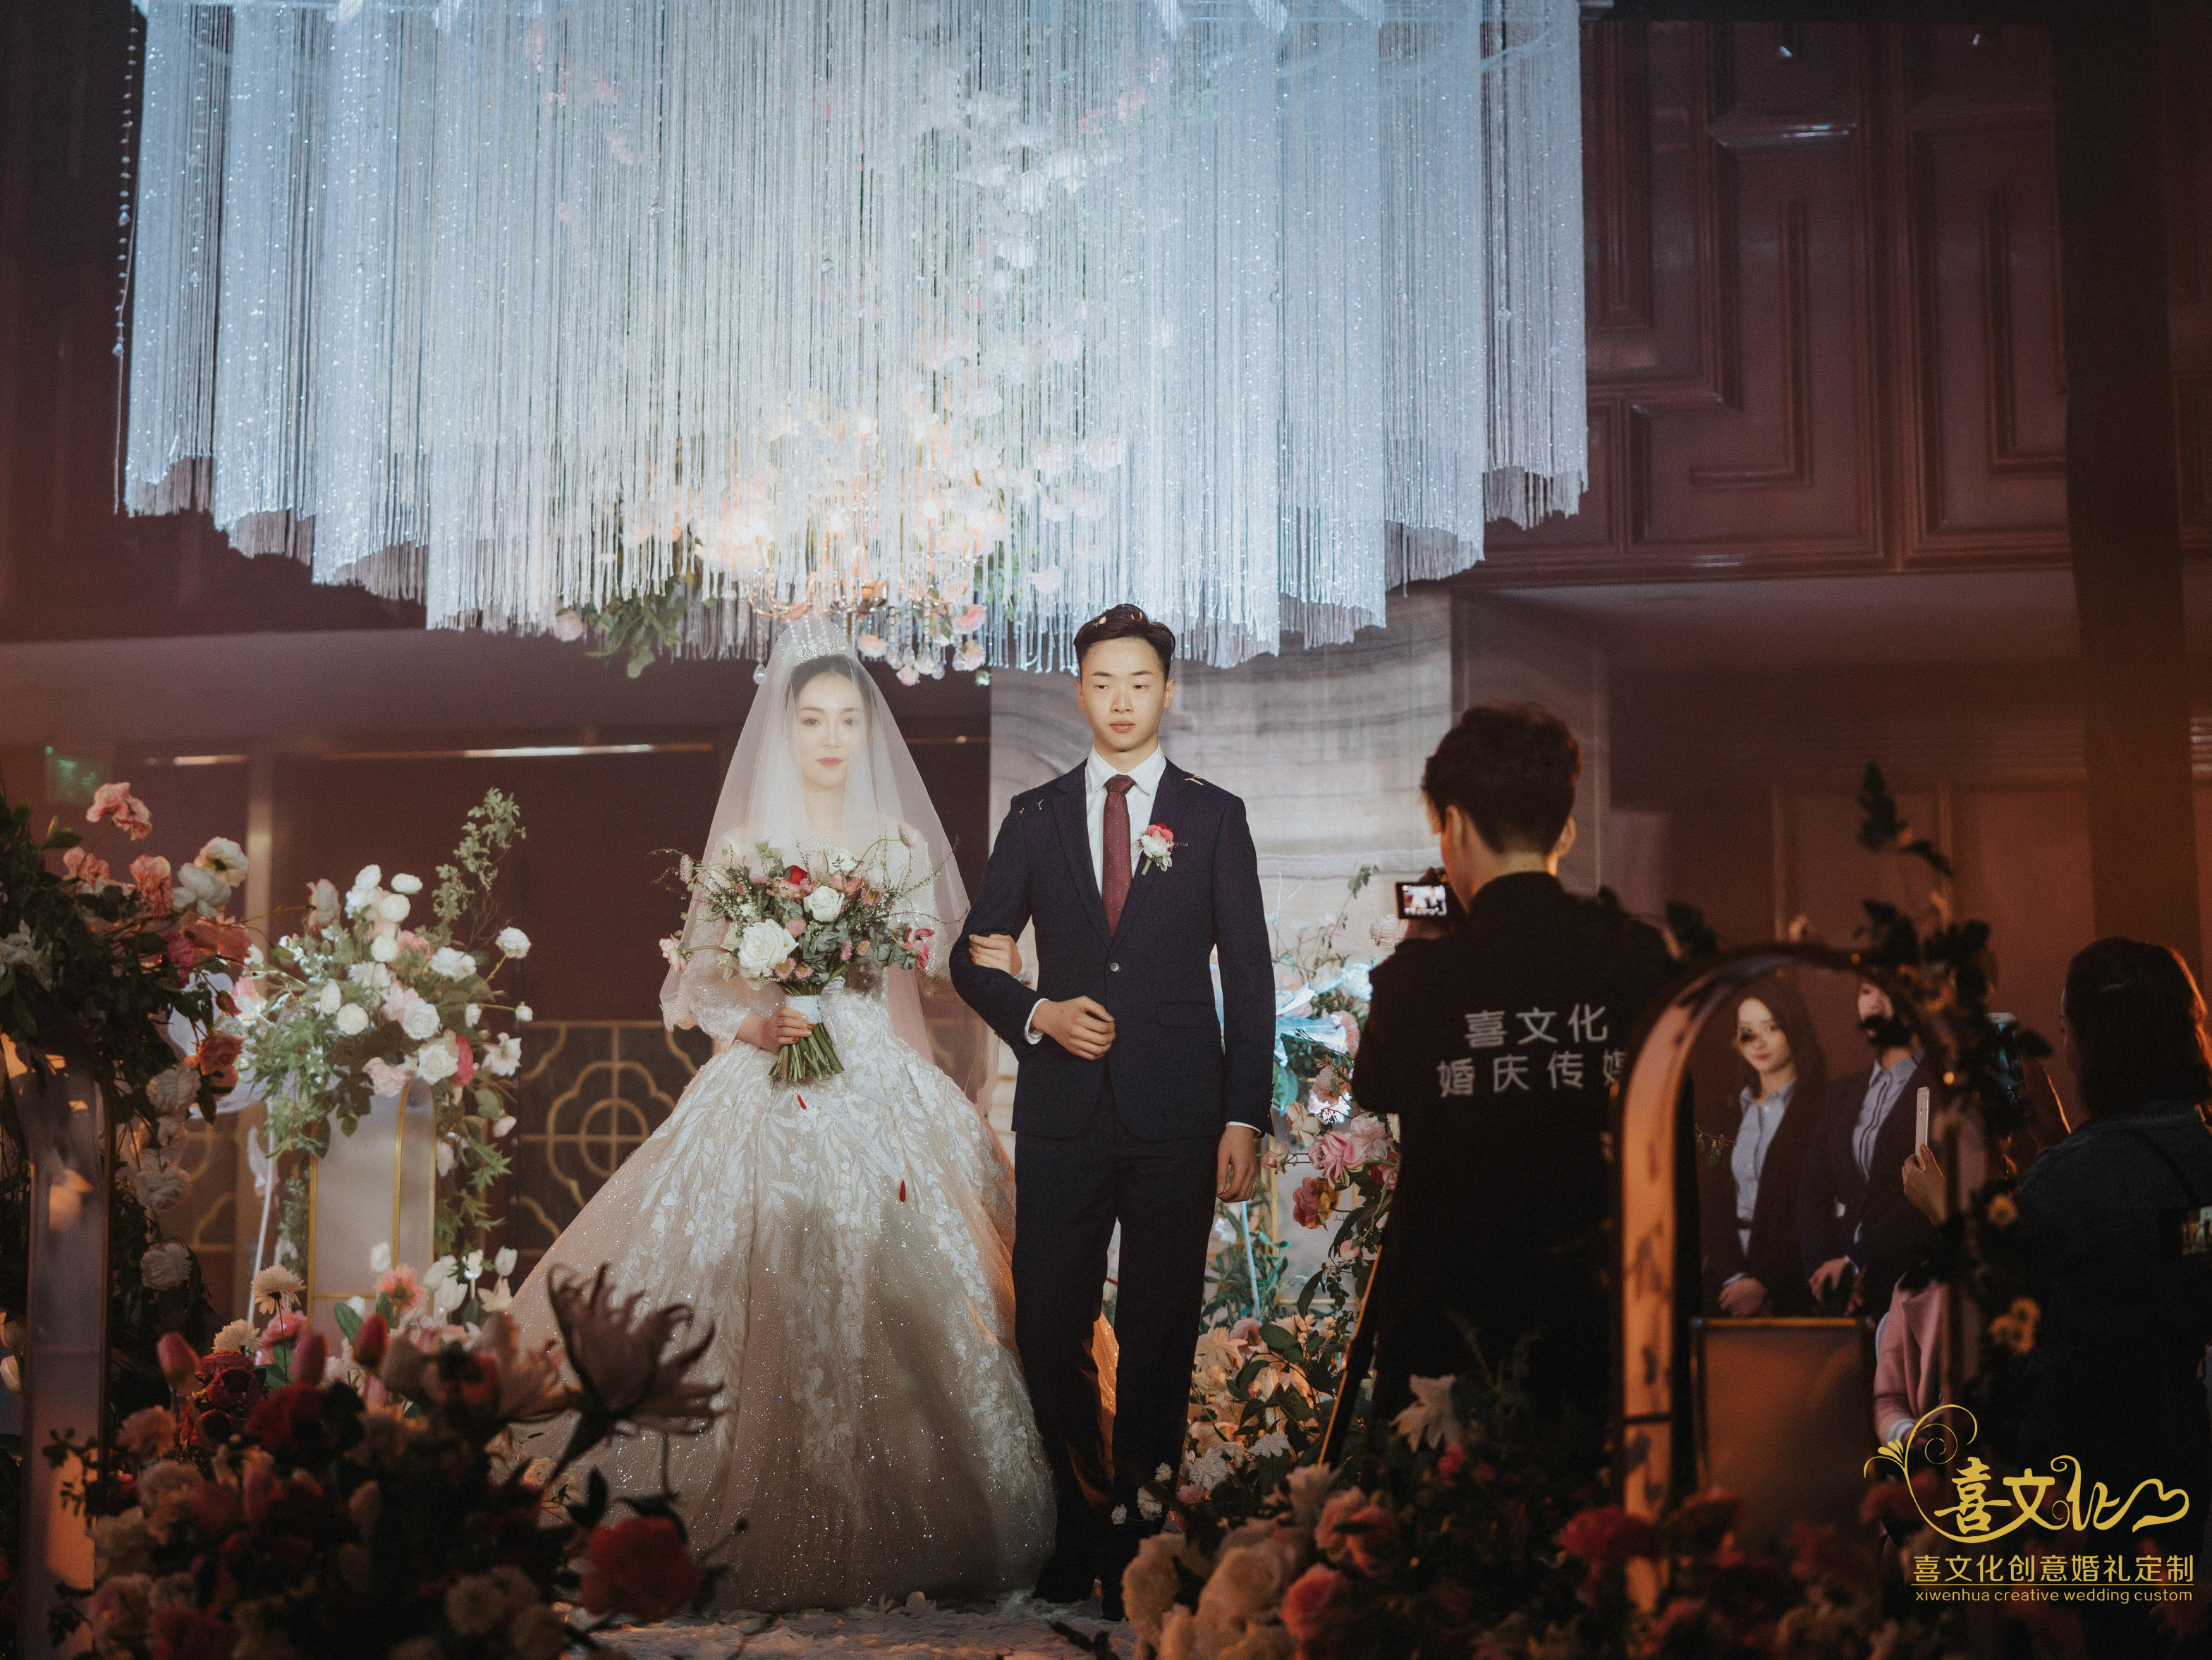 韩式小清新简约风格婚礼-南阳喜文化创意婚礼定制